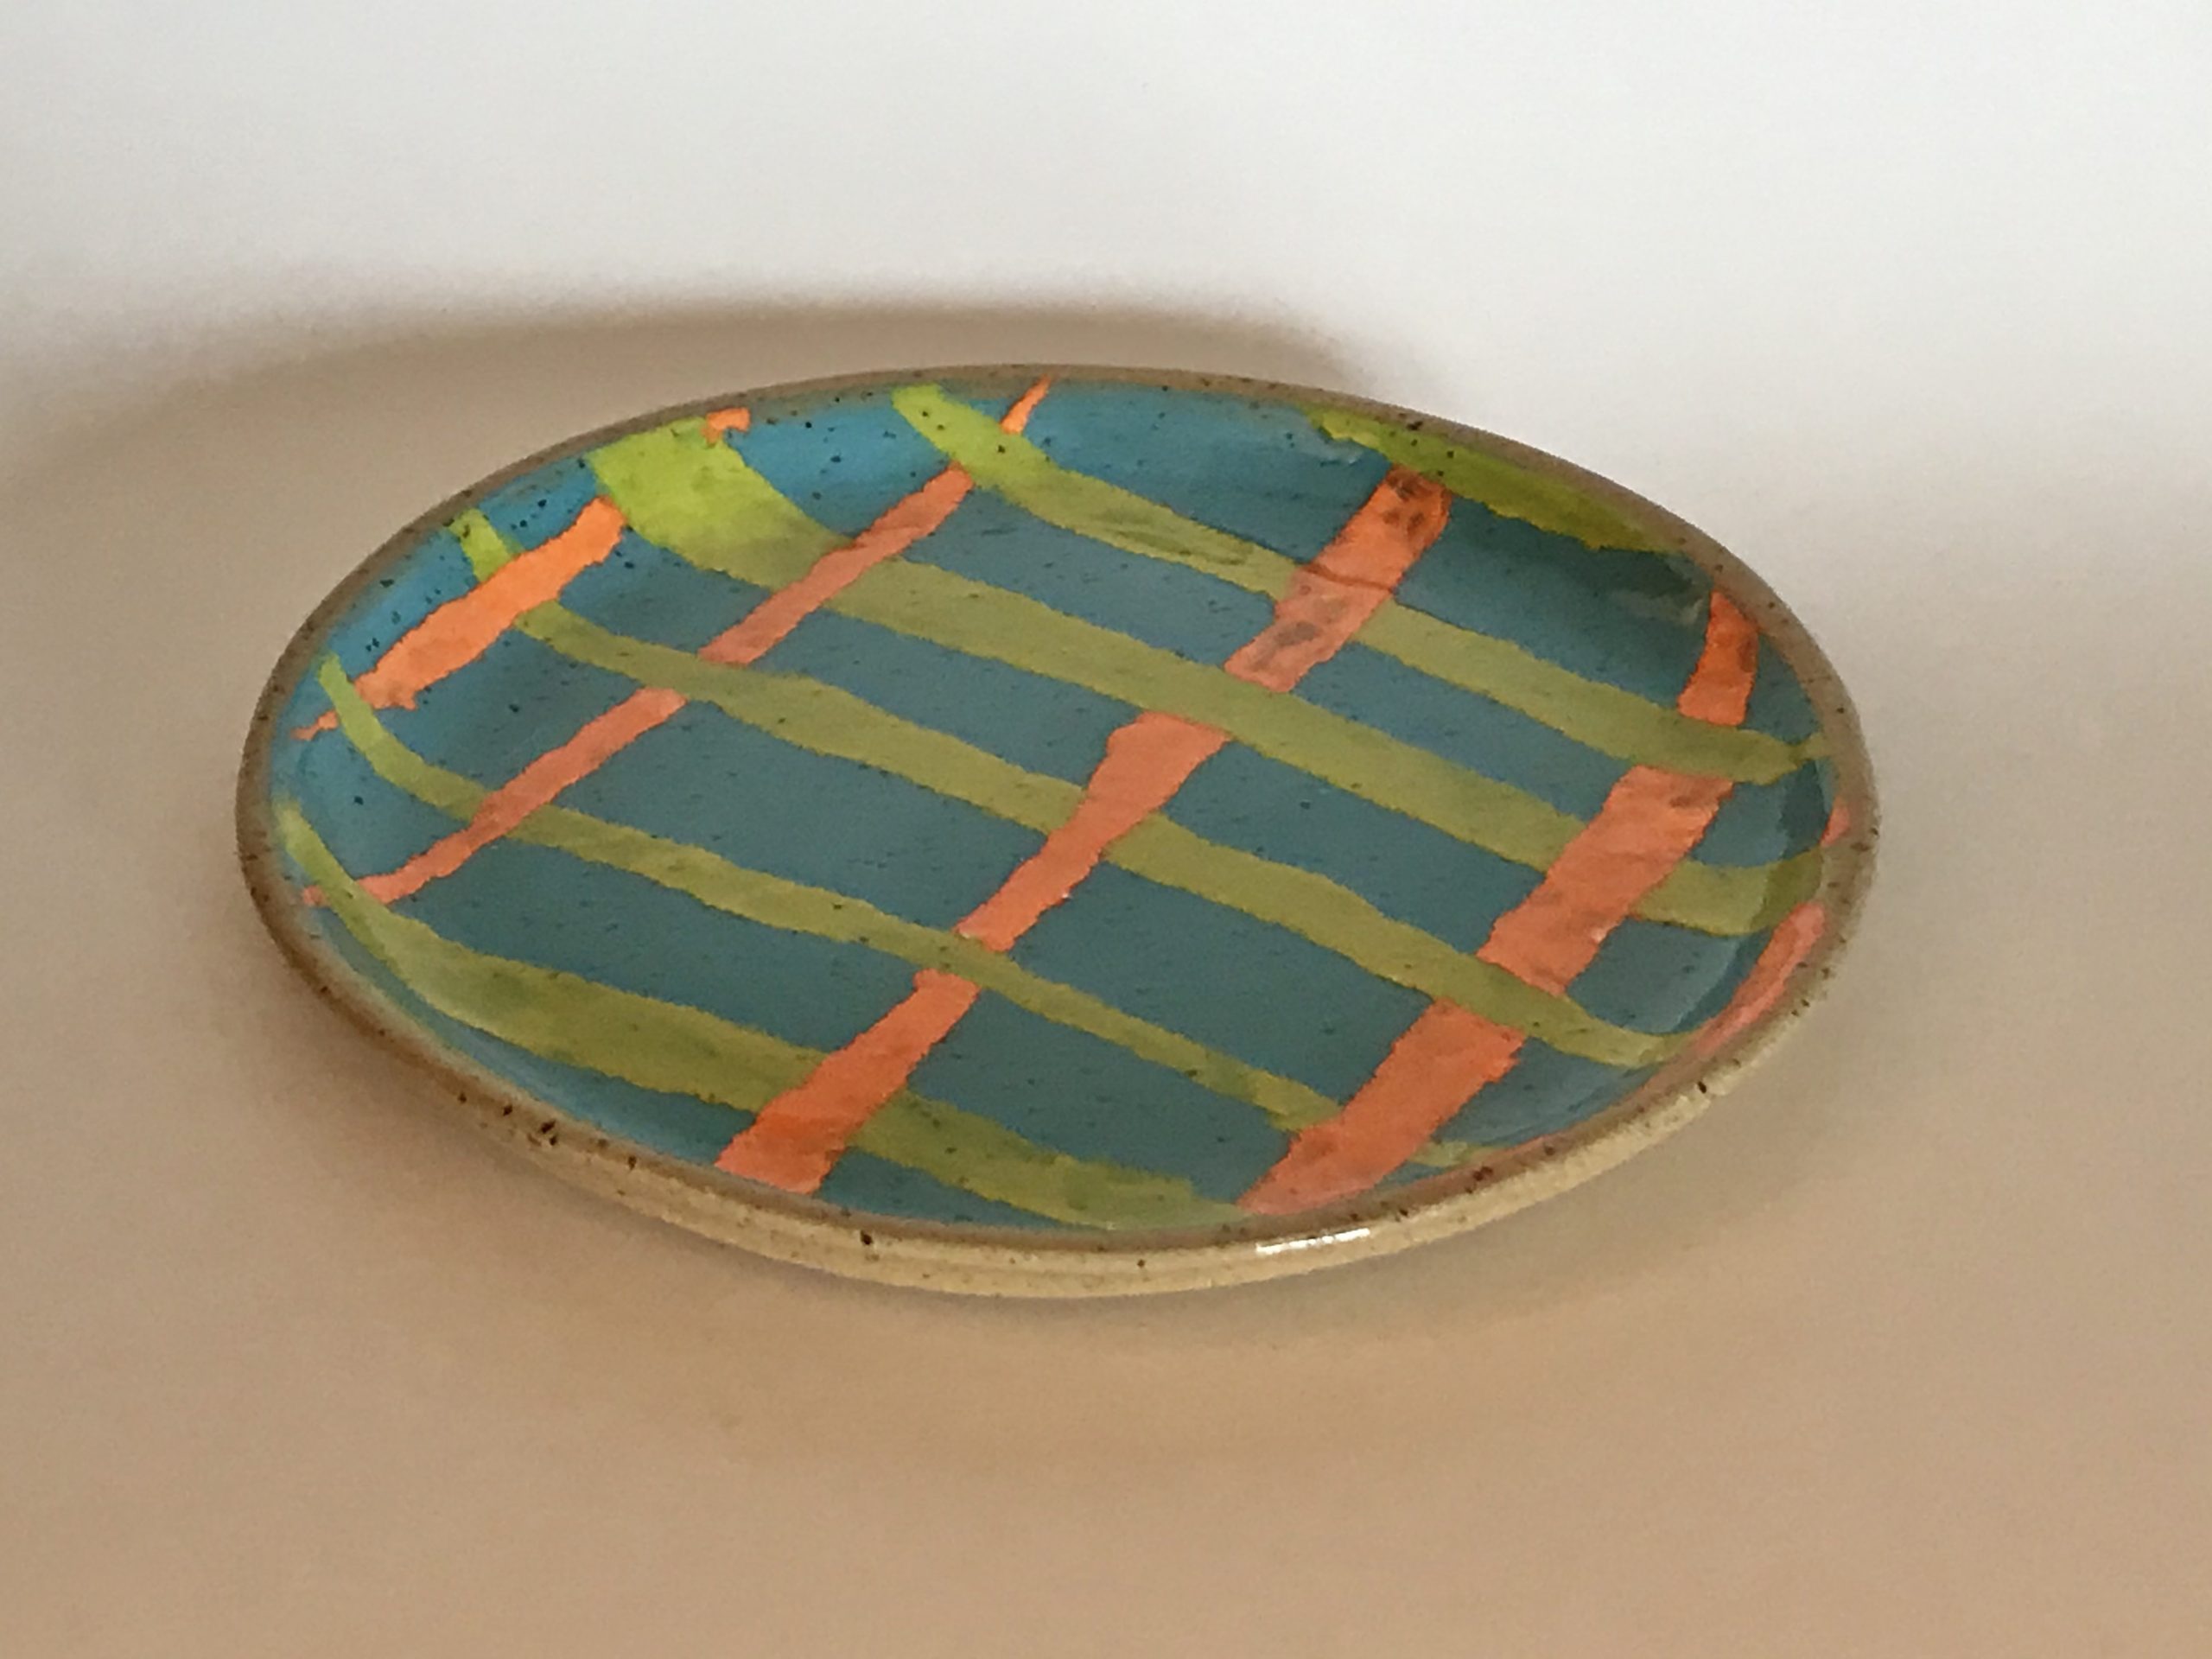 ceramic striped plate.